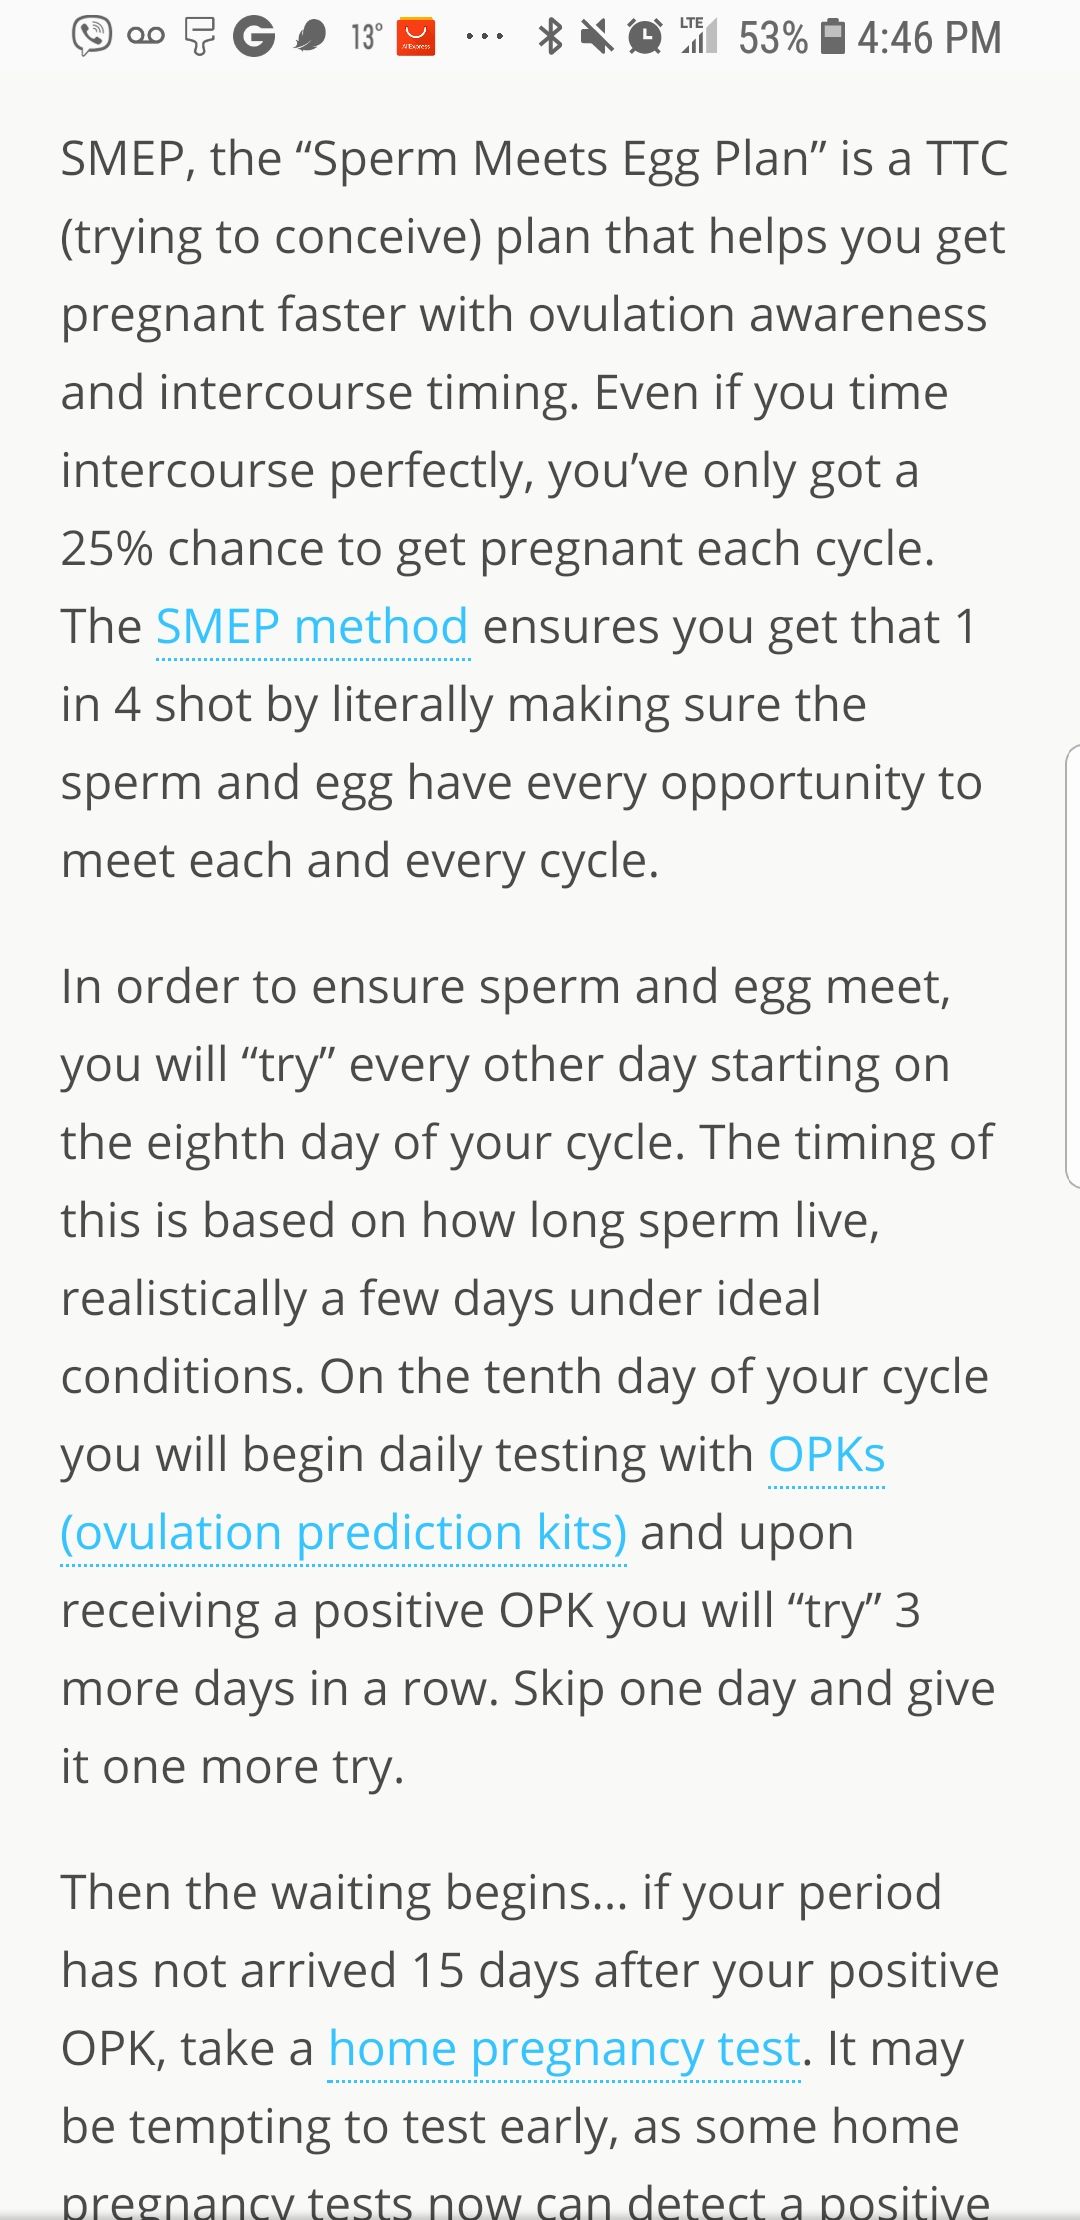 Fennel reccomend Sperm meets egg plan